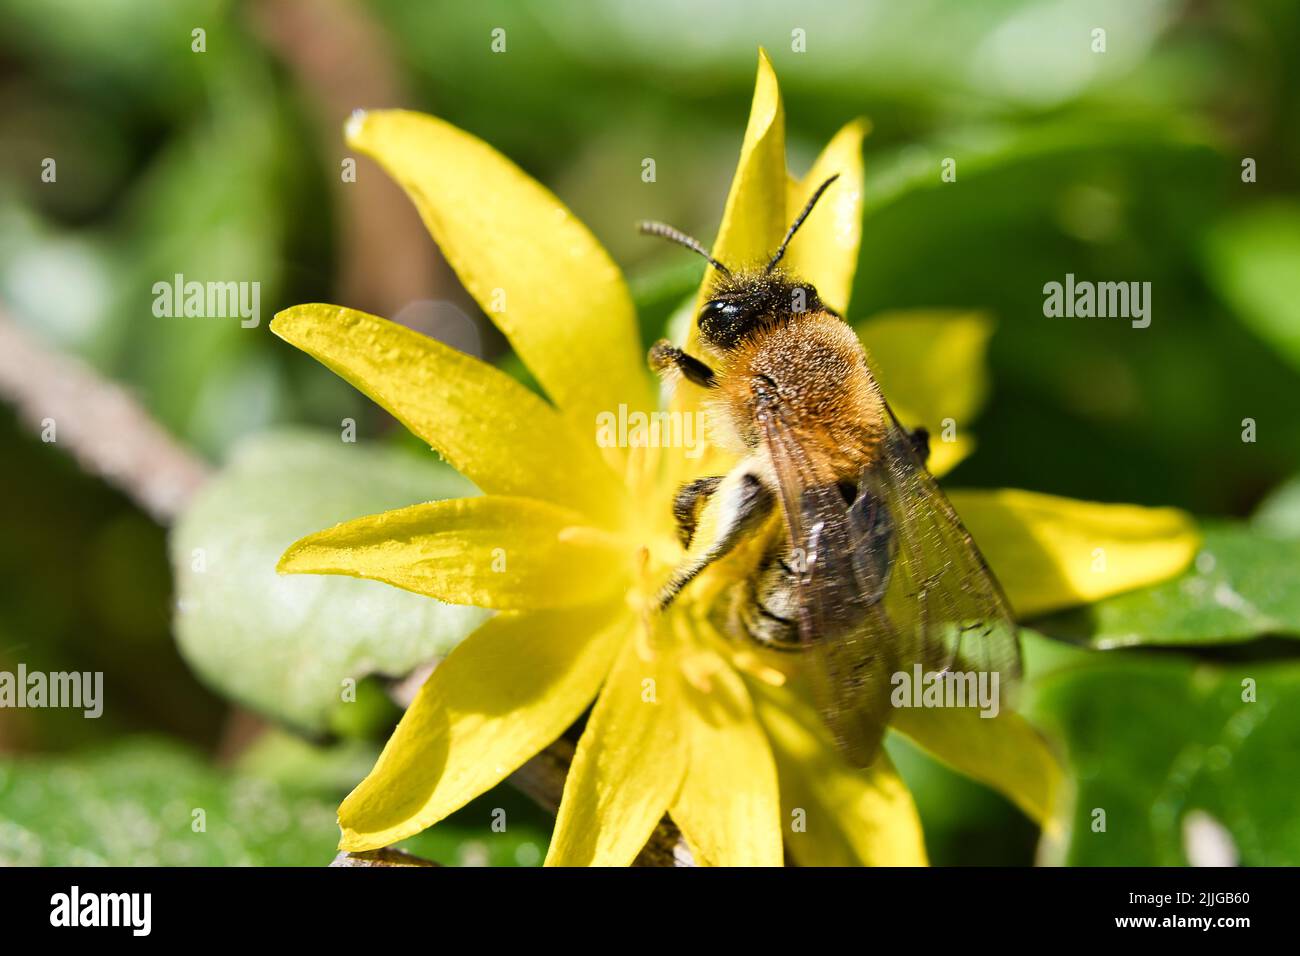 Honigbiene sammelt Nektar auf einer gelben Blume. Fleißige Insekten aus der Natur. Von Bienen ernten wir den Honig. Tierfoto aus der Natur Stockfoto